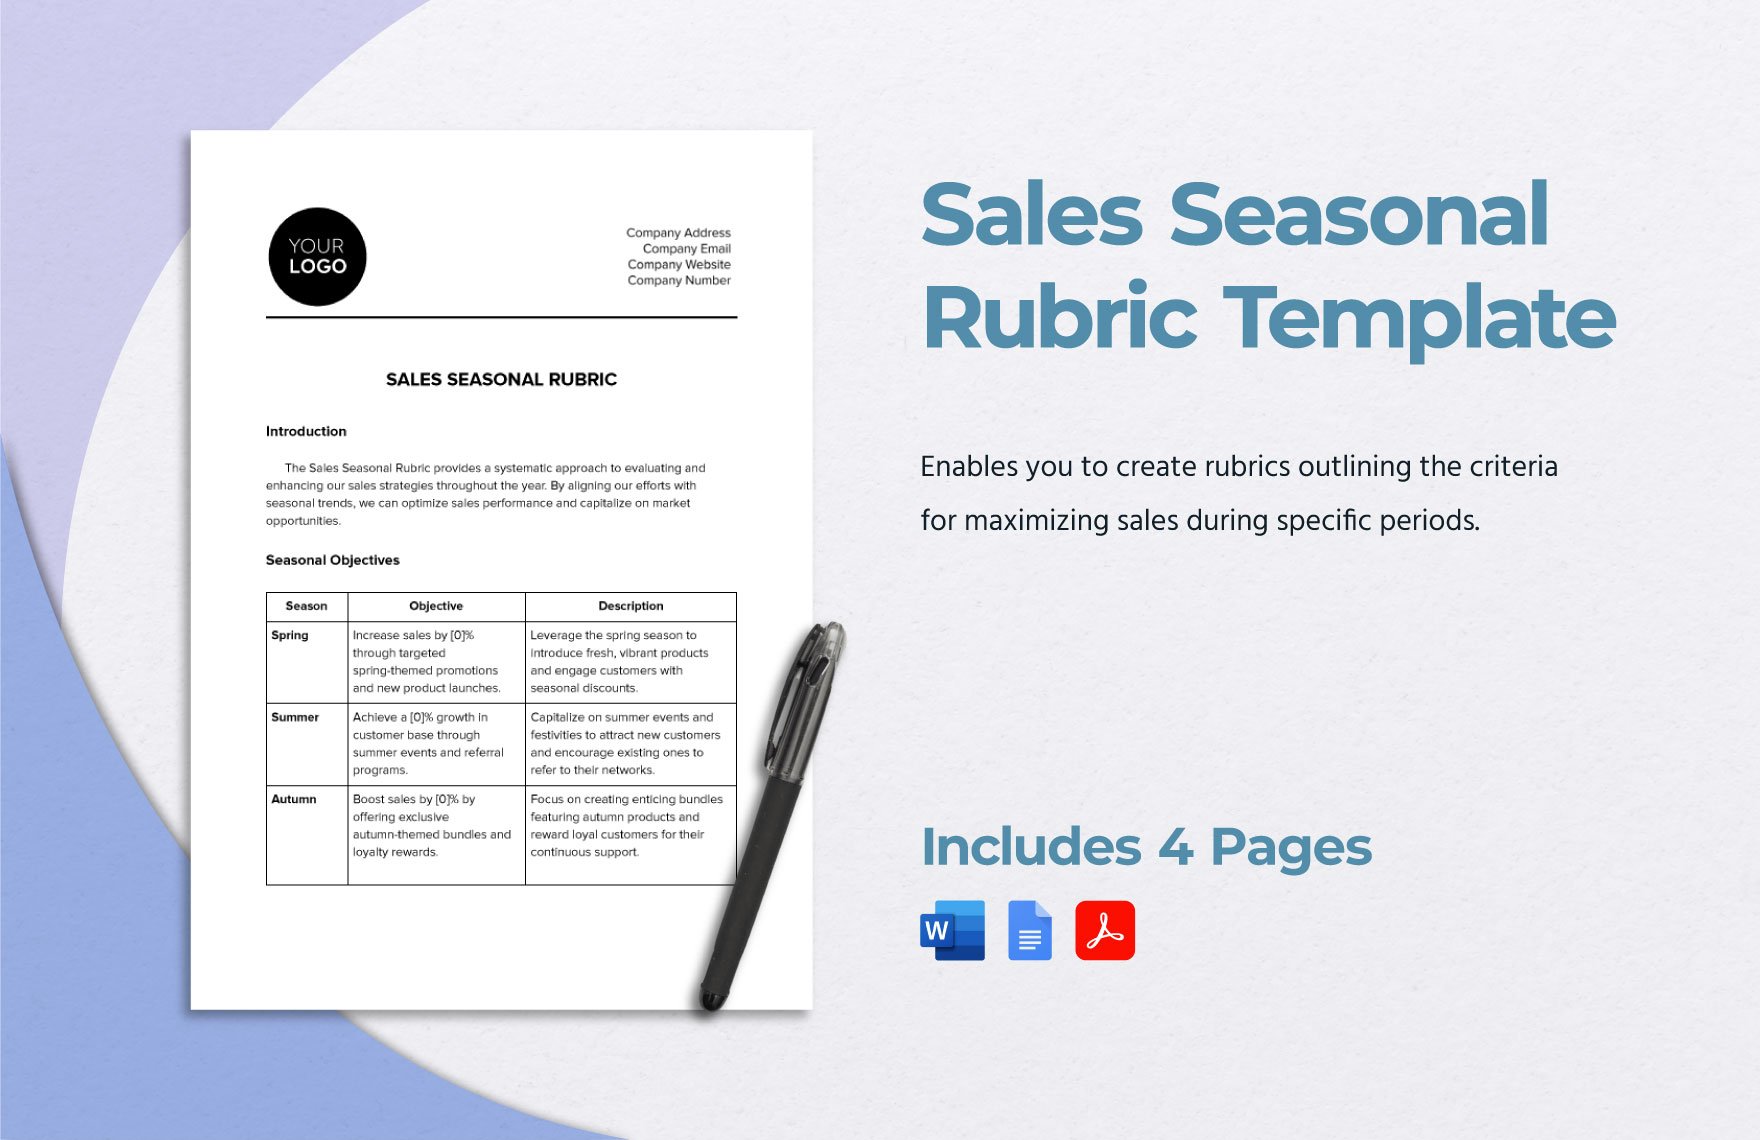 Sales Seasonal Rubric Template